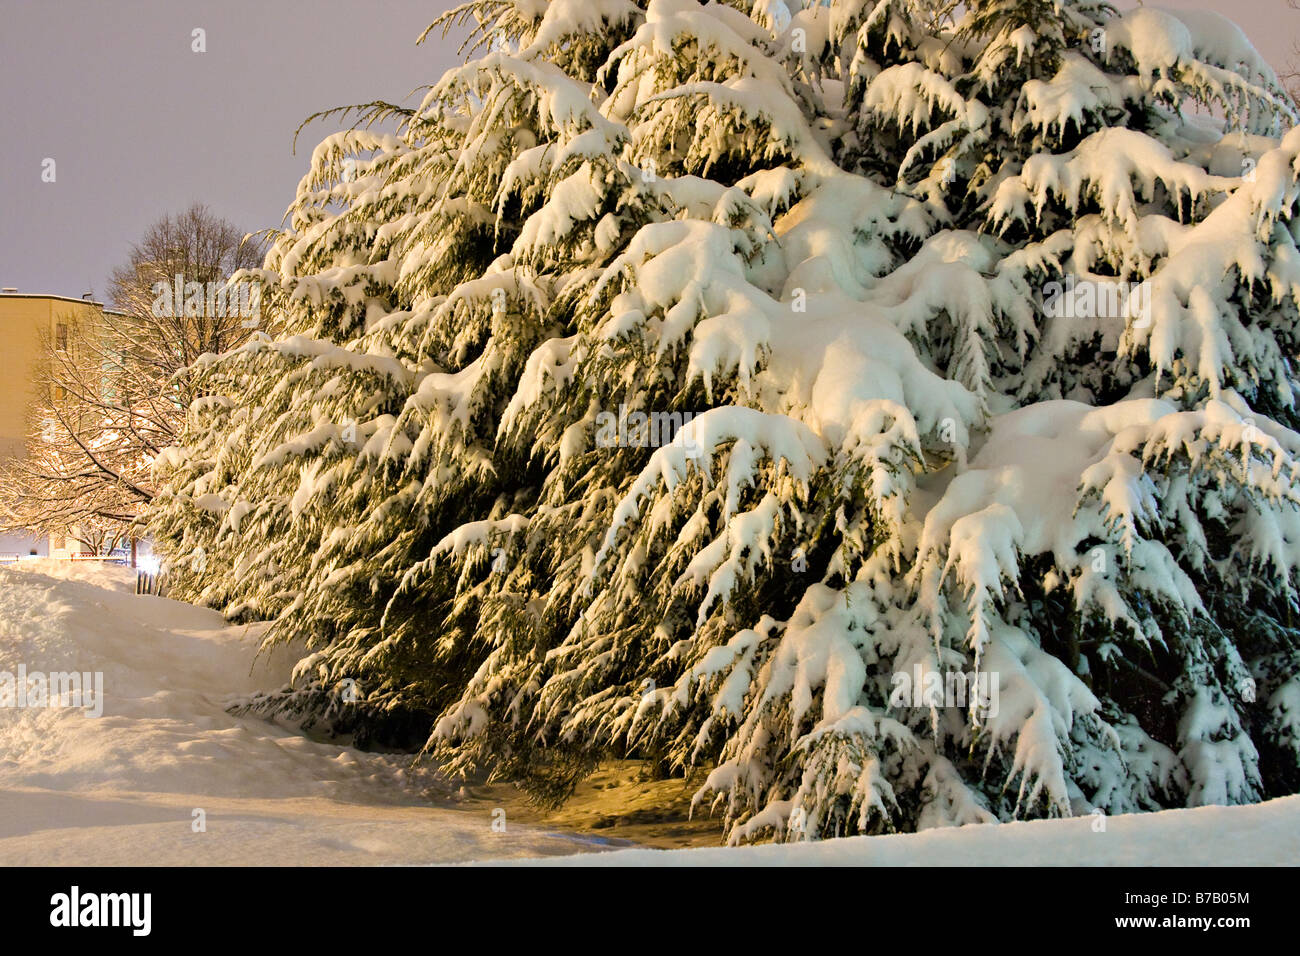 Les pruches du Canada (Tsuga canadensis) recouvert de neige. Banque D'Images